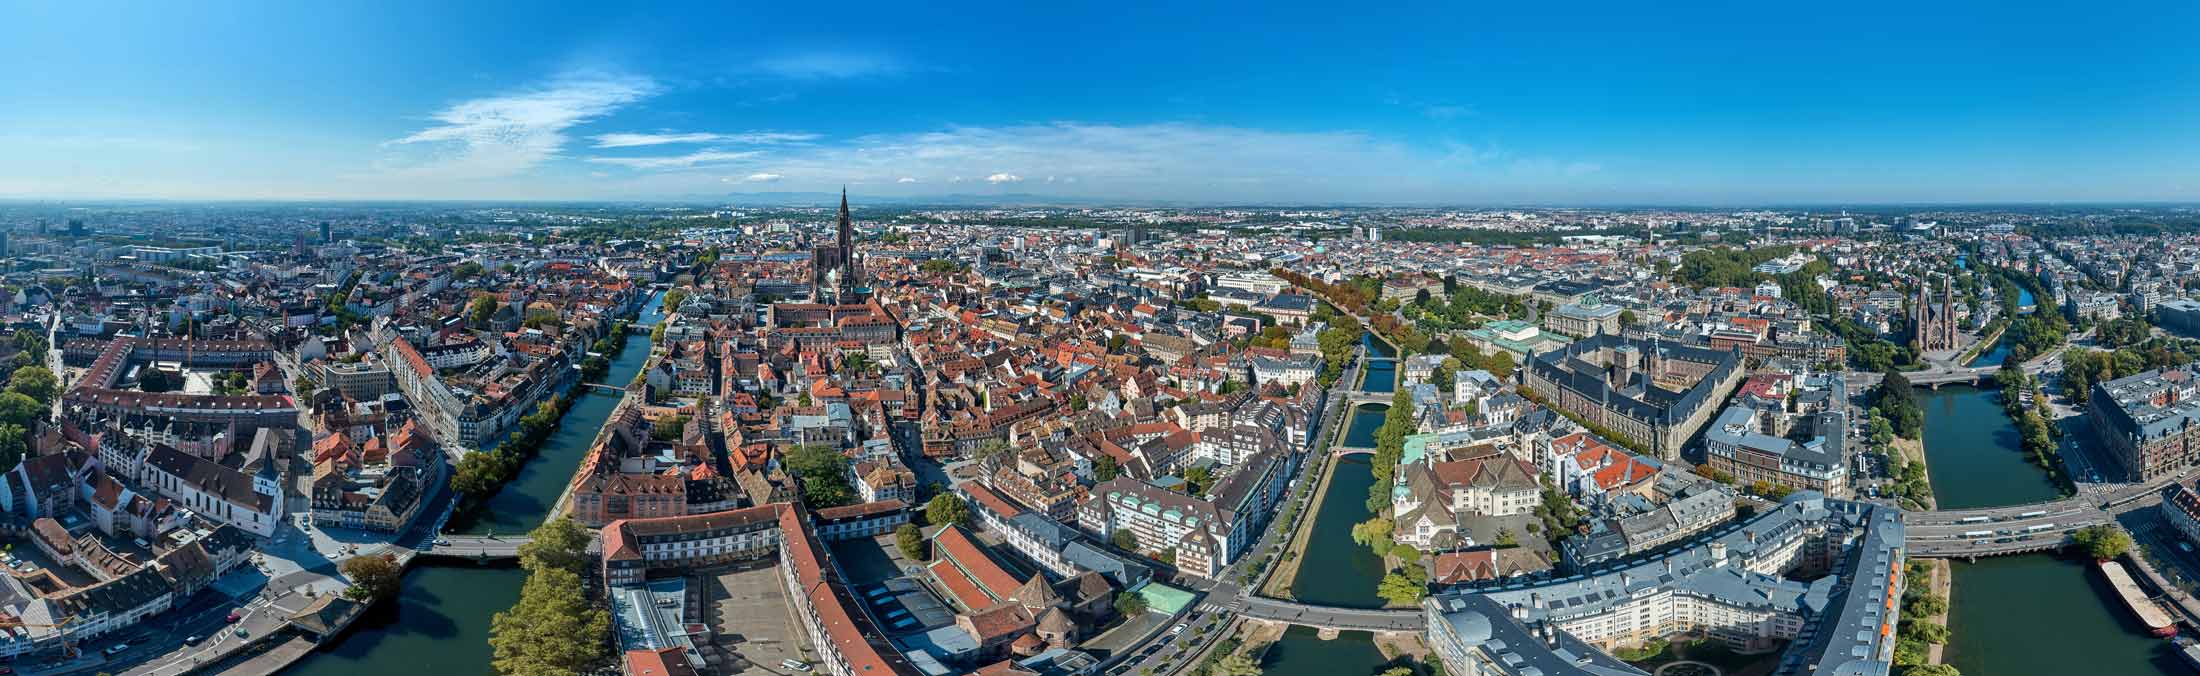 Prise de vue panoramique réalisée par drone de Strasbourg avec la Cathédrale Notre-Dame